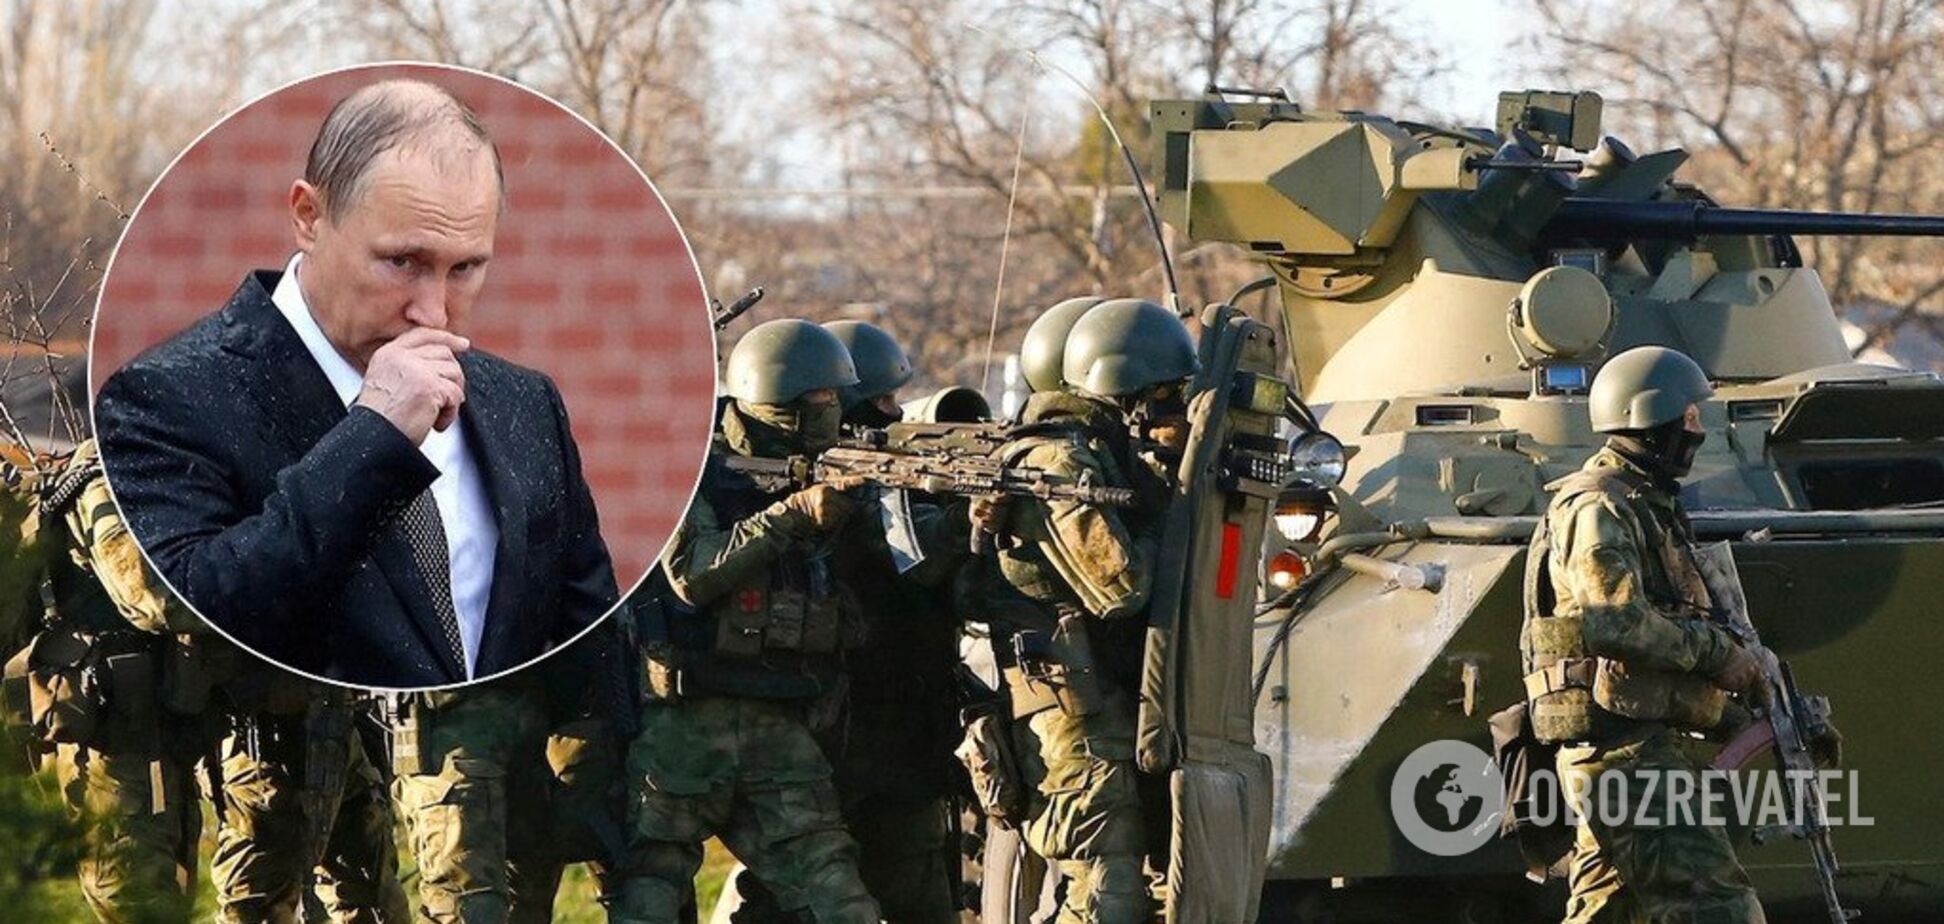 Почти тысяча солдат Путина: коронавирус разгорелся в России с новой силой